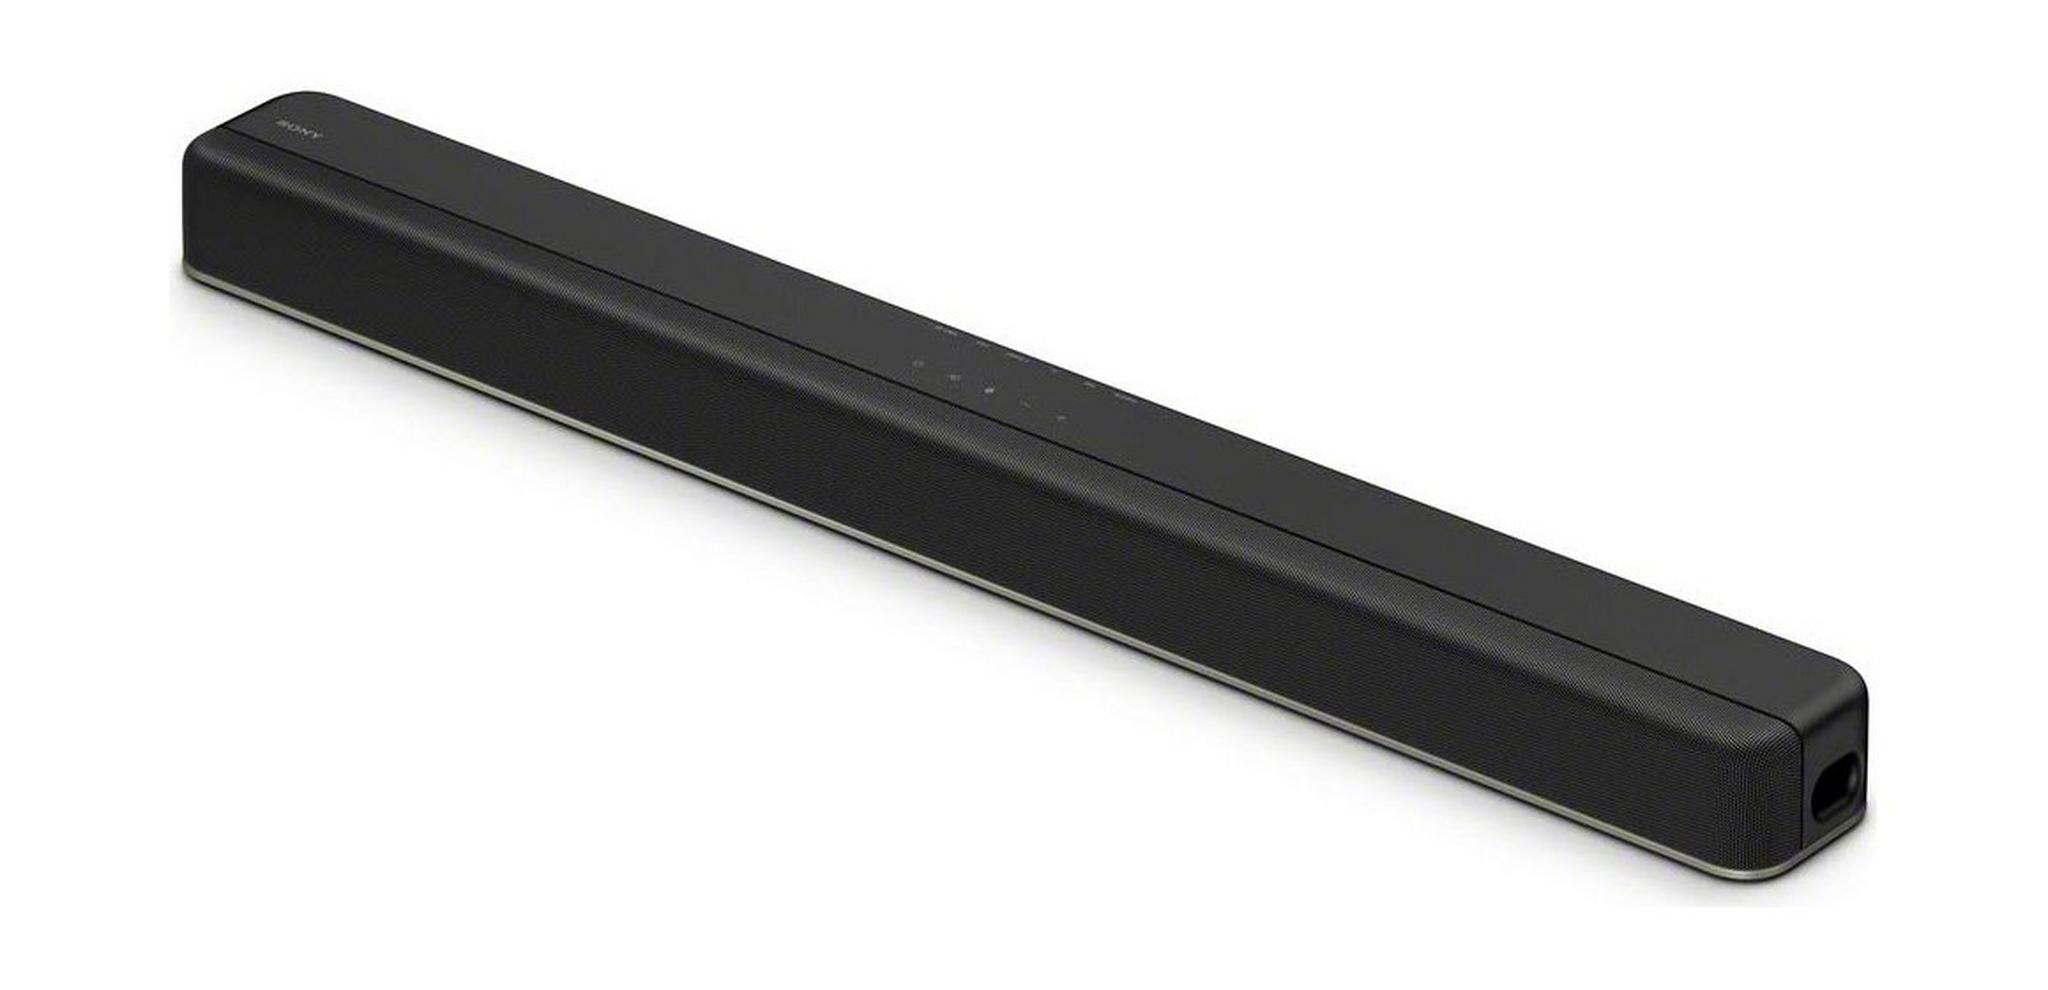 Sony HT-X8500 2.1Channel Bluetooth Single Sound Bar